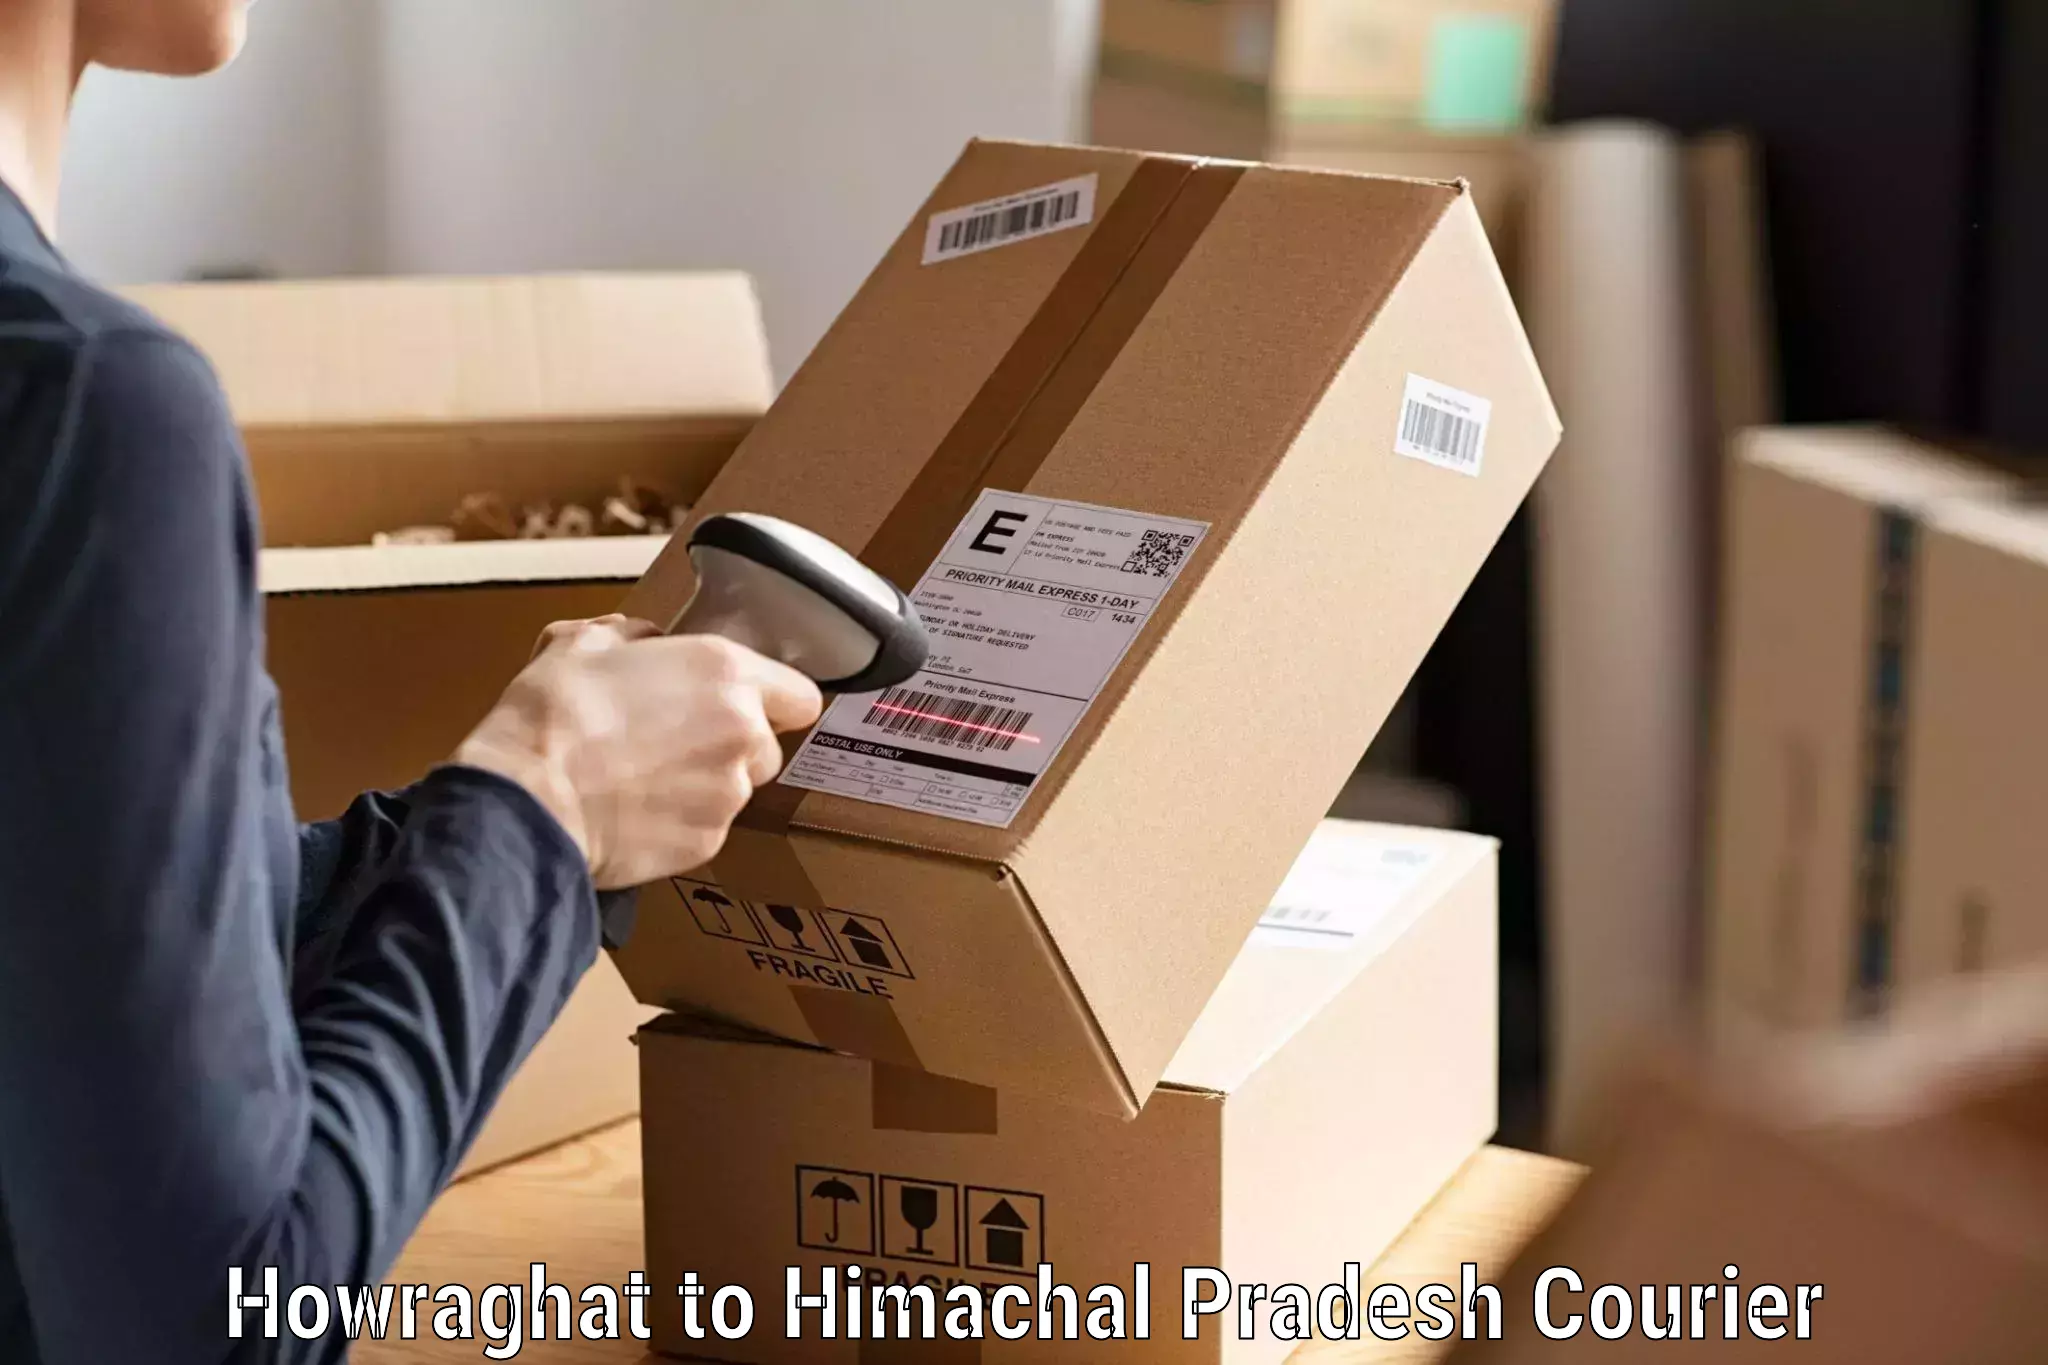 Affordable parcel service Howraghat to Dehra Gopipur